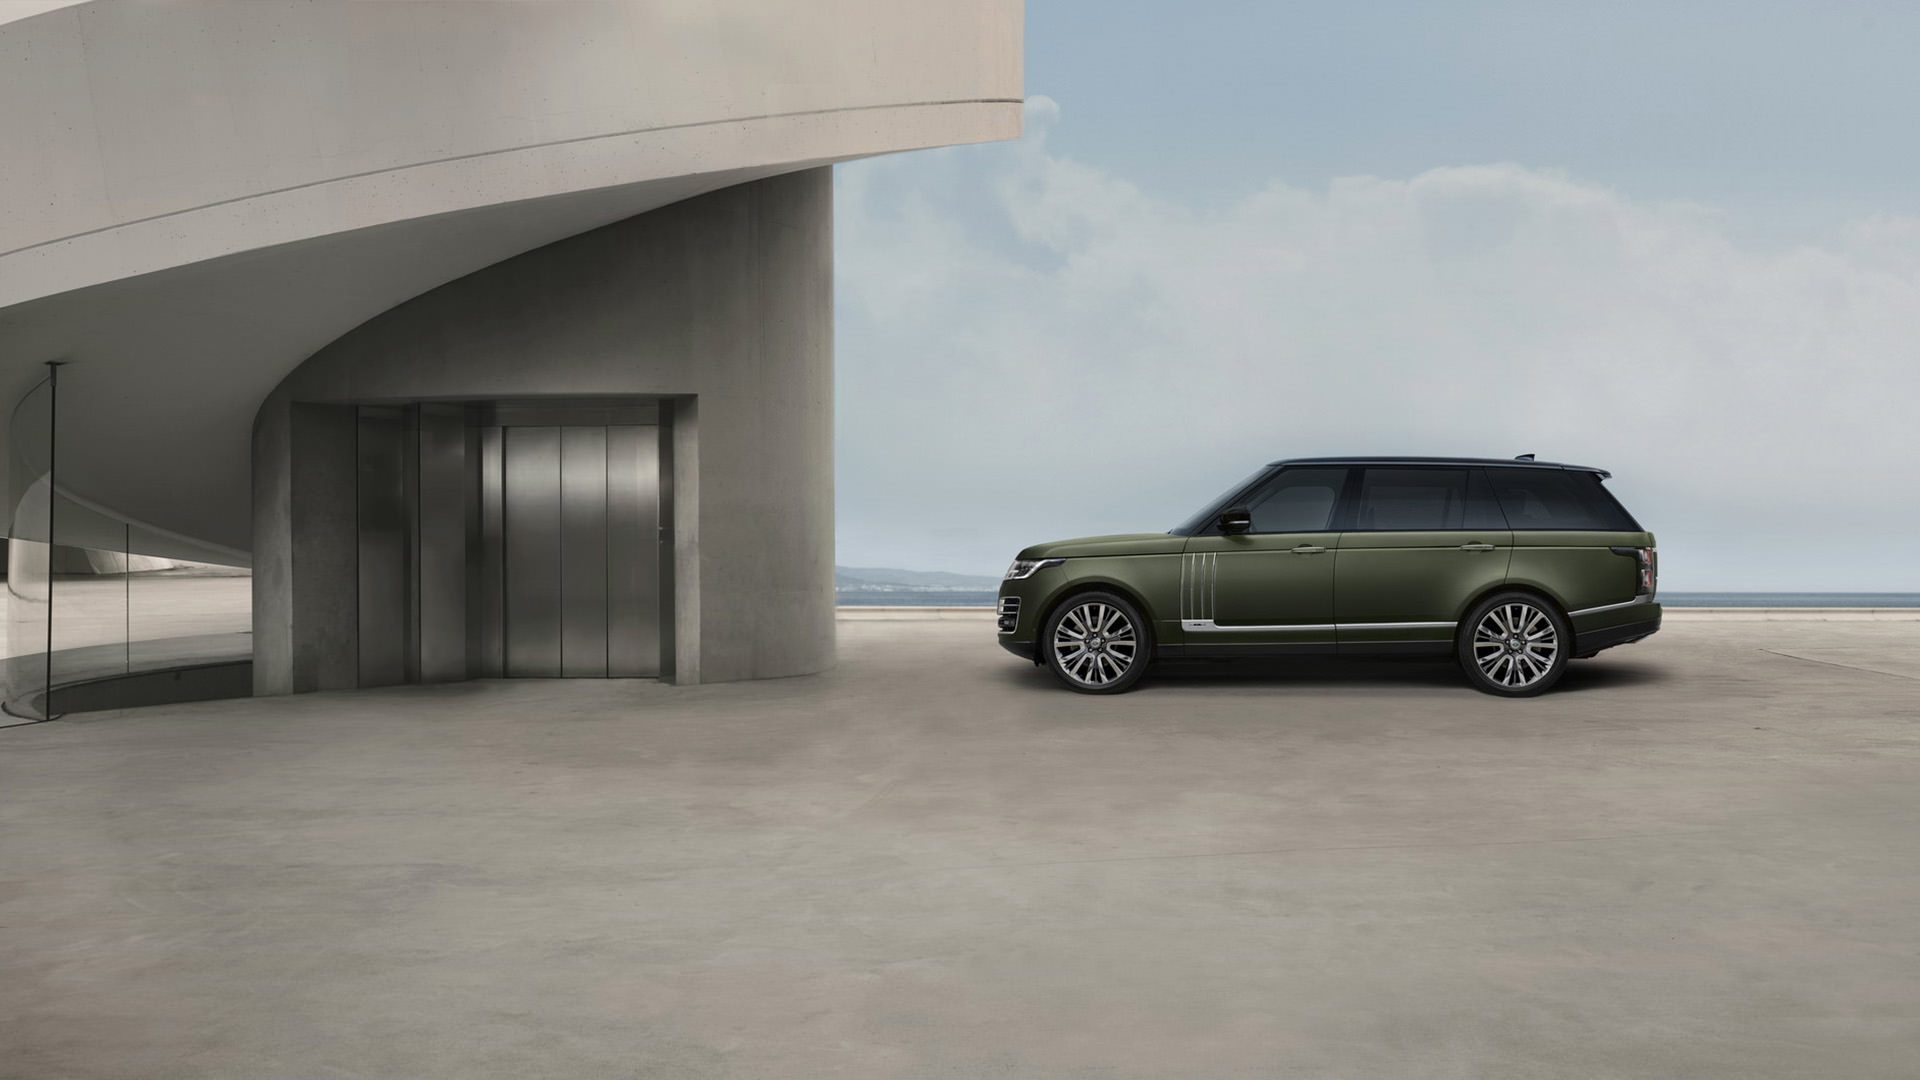 نمای جانبی شاسی بلند لندرور رنجرور اس وی اتوبیوگرافی / Land Rover Range Rover SVAutobiography سبز رنگ